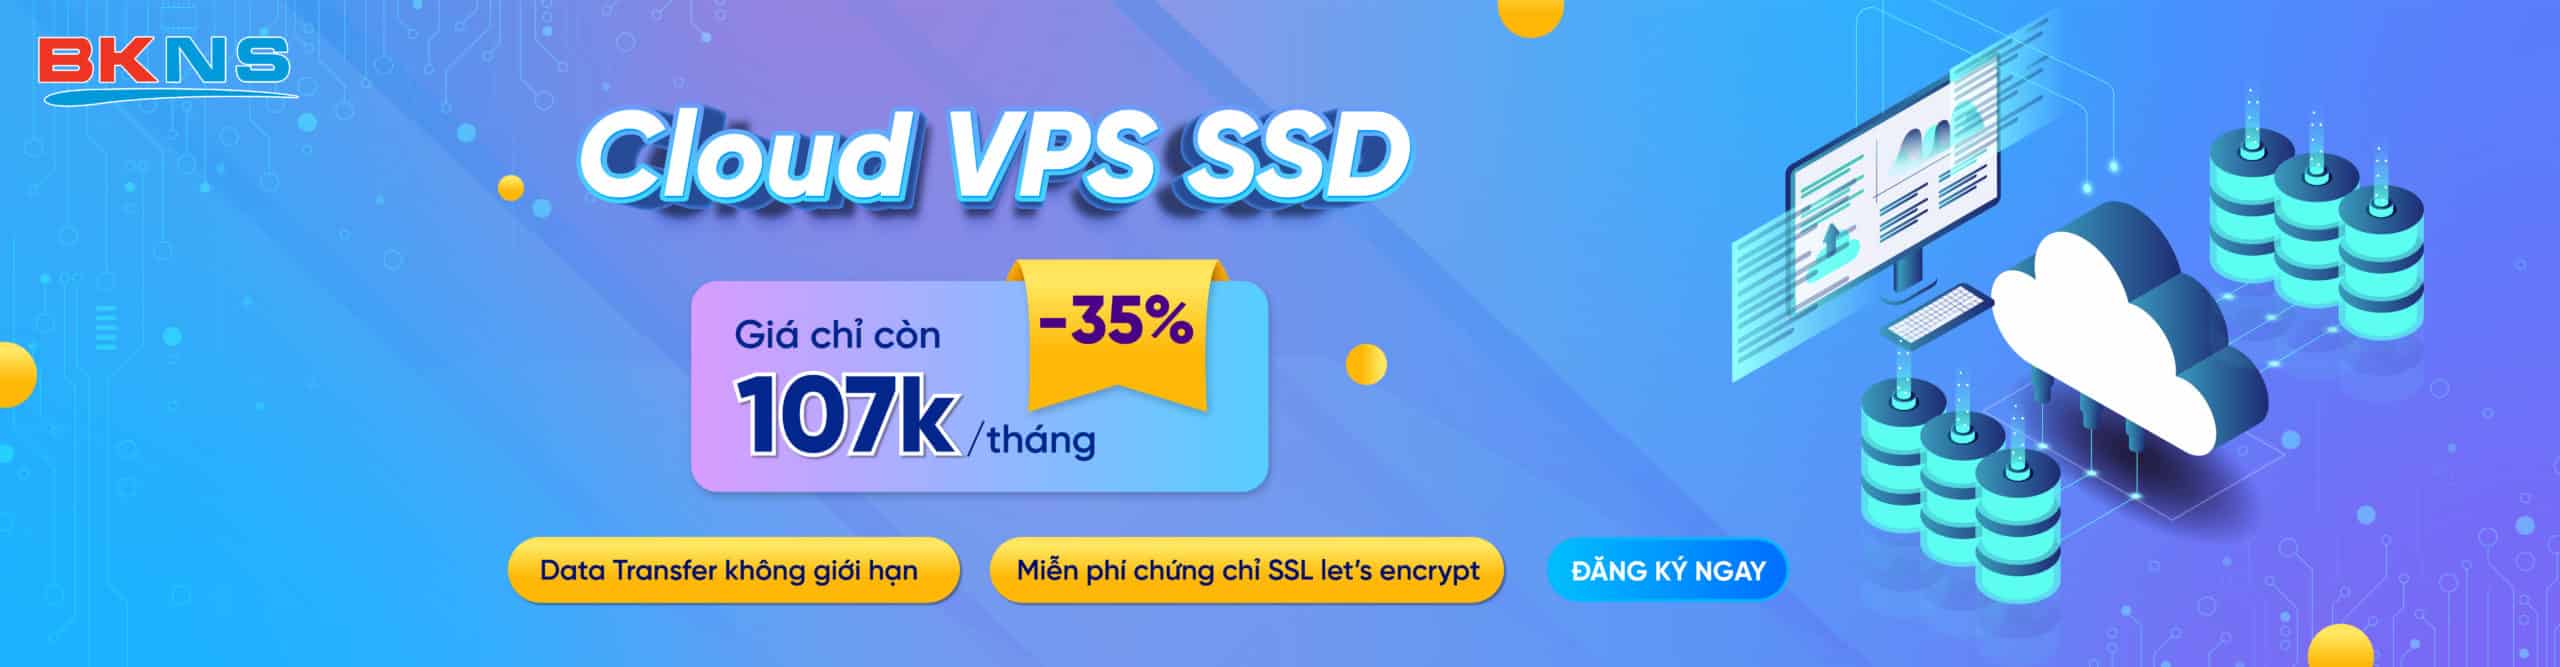 Cloud_VPS-SSD